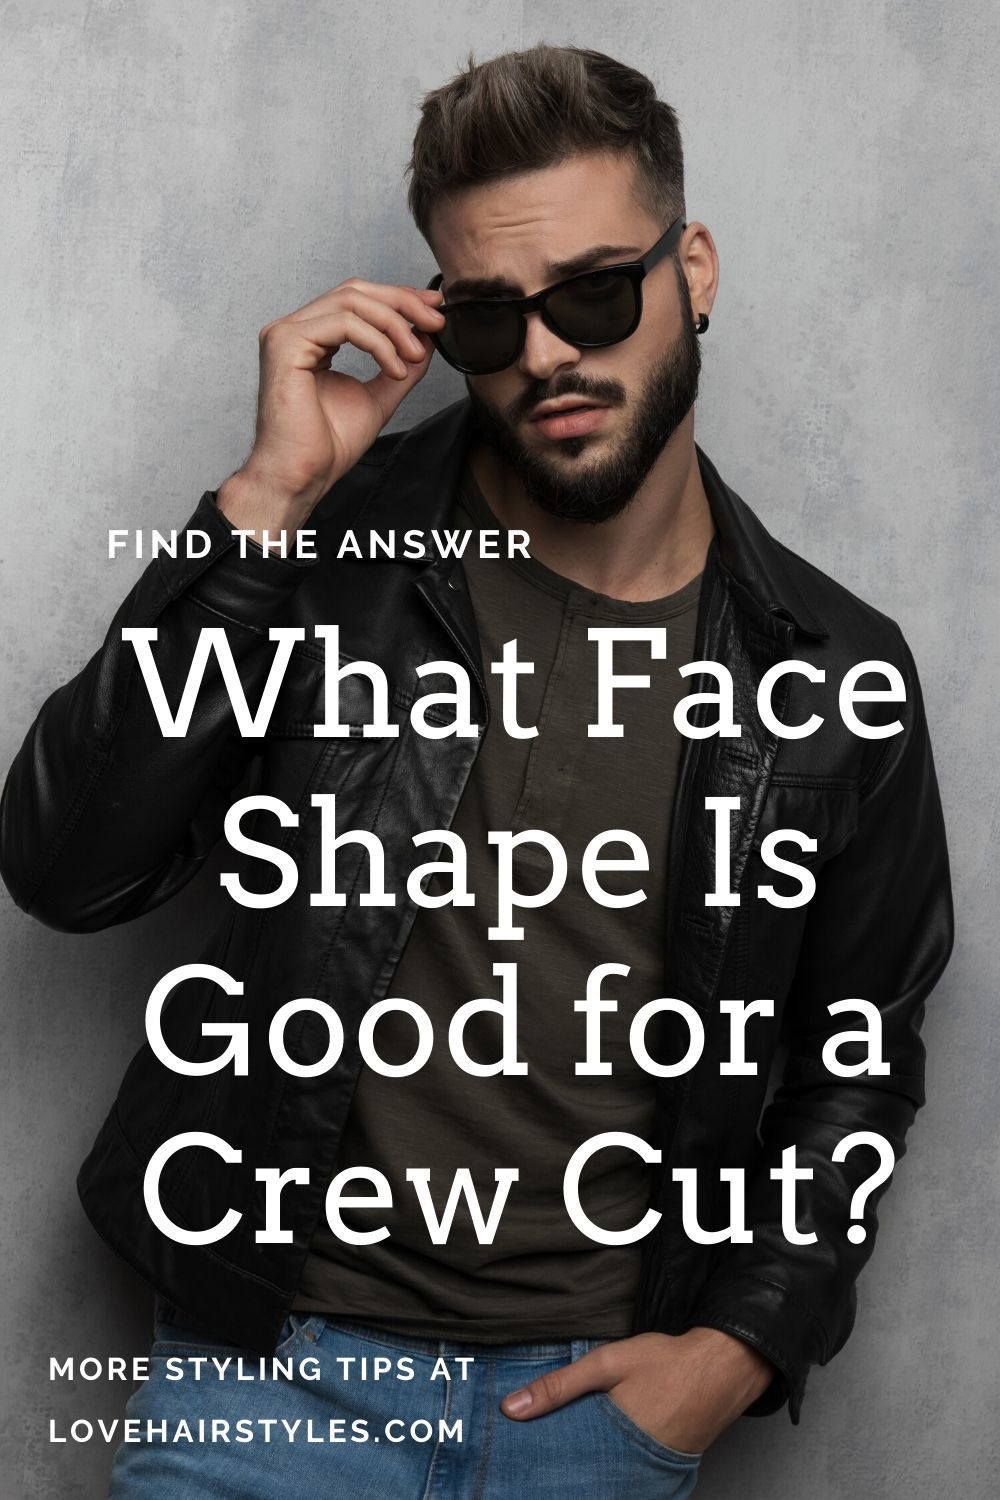 Qual a forma do rosto é adequada para cortar um quadrado?